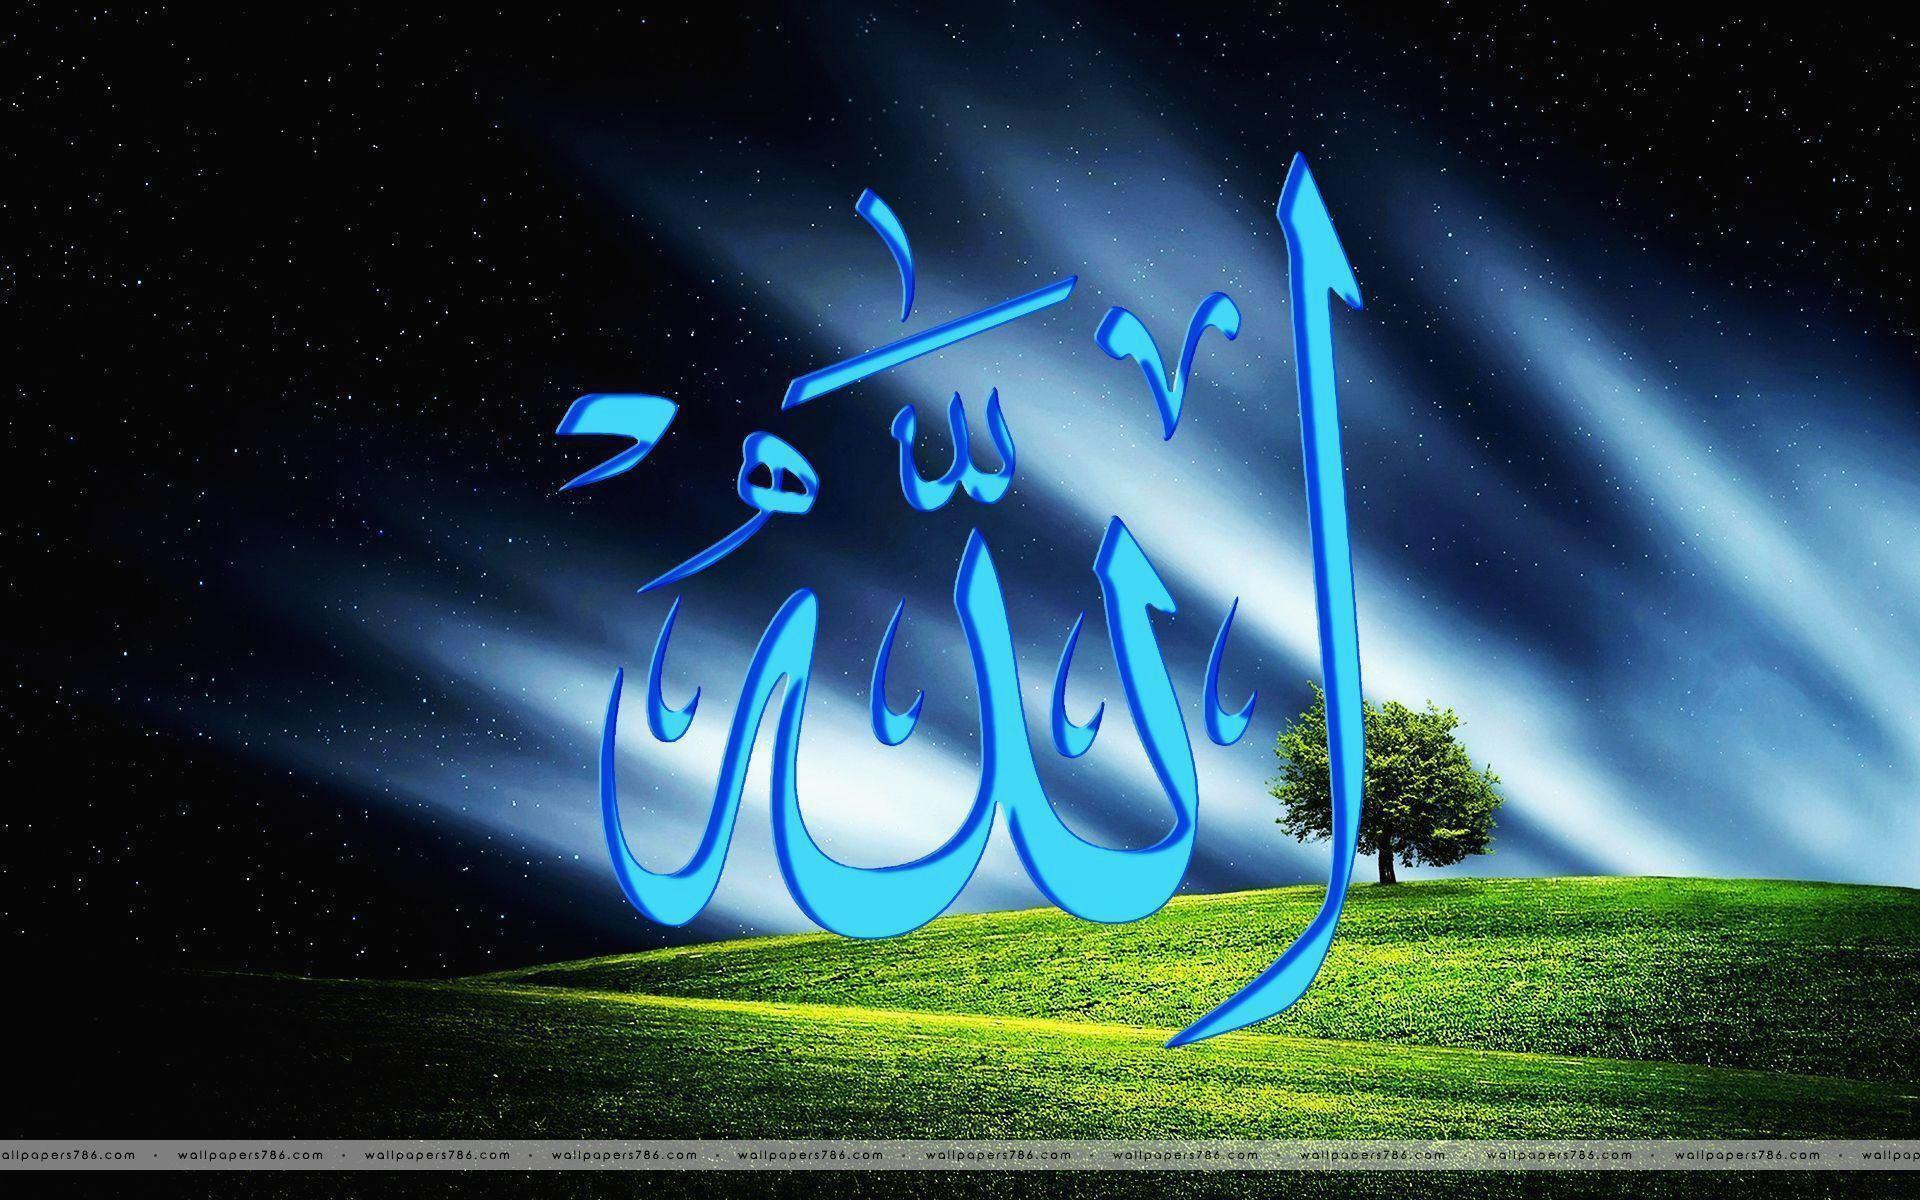 Download Download Wallpaper Allah Bergerak 35 Mariacenoura - Allah Name Image Download , HD Wallpaper & Backgrounds